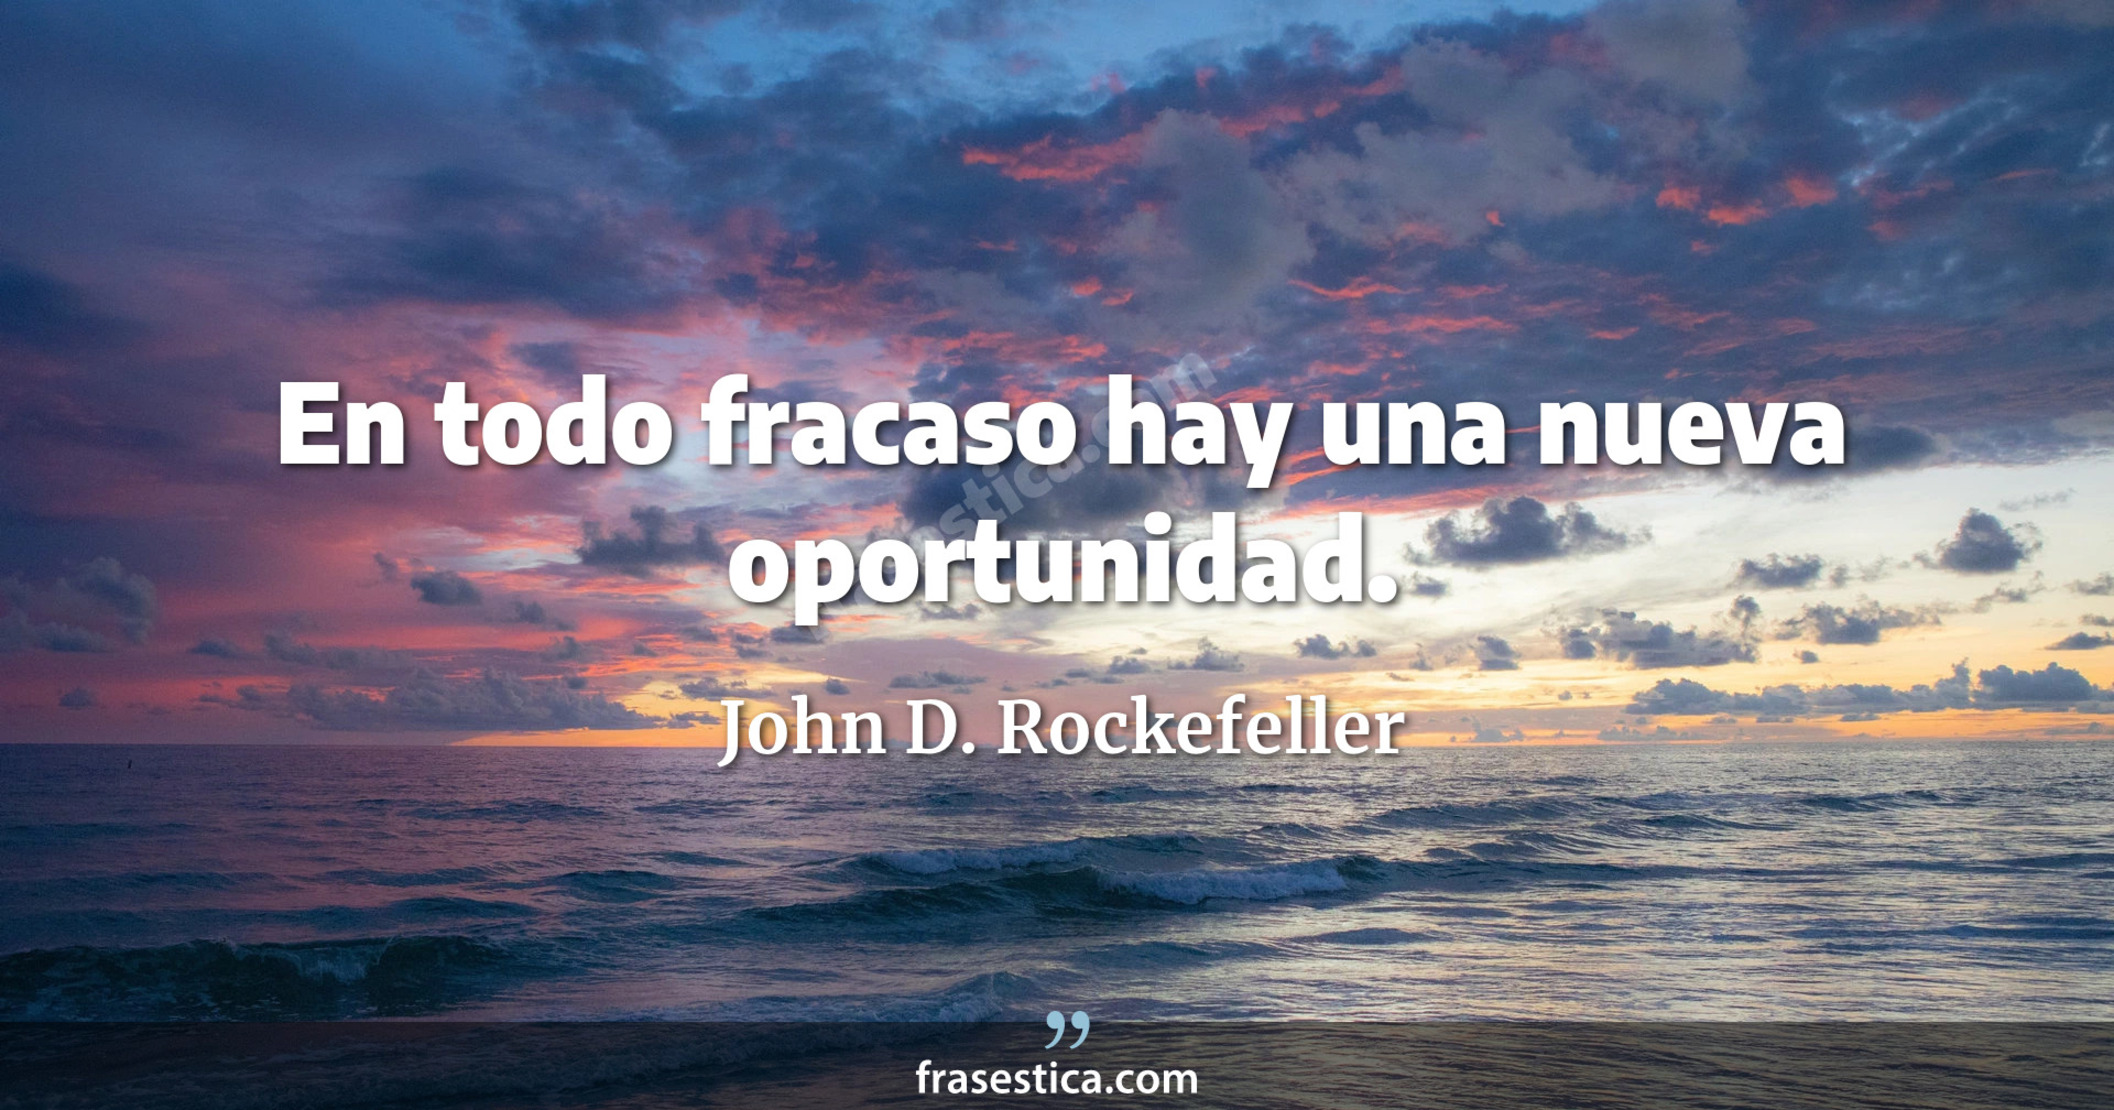 En todo fracaso hay una nueva oportunidad. - John D. Rockefeller